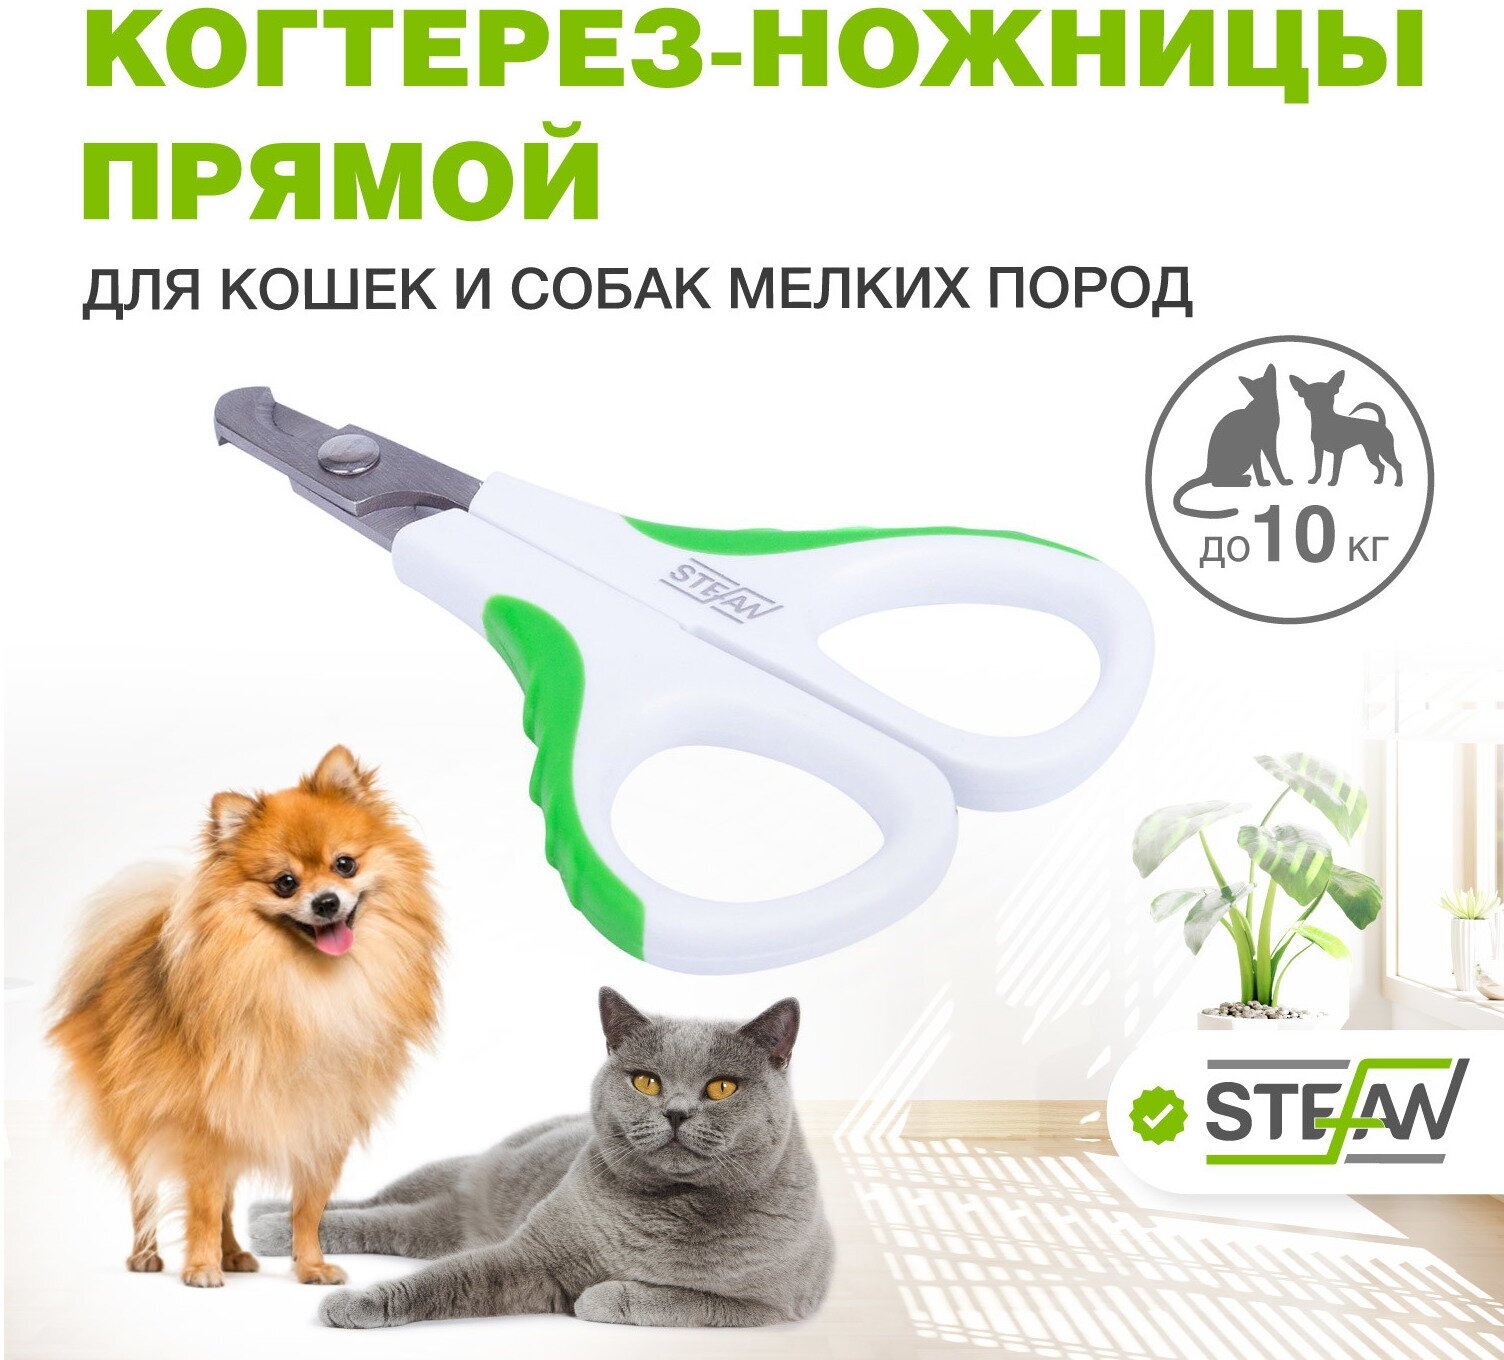 Когтерез-ножницы STEFAN (Штефан) для стрижки когтей животных (кошек и собак), секатор для груминга, прямой, малый, GXS019